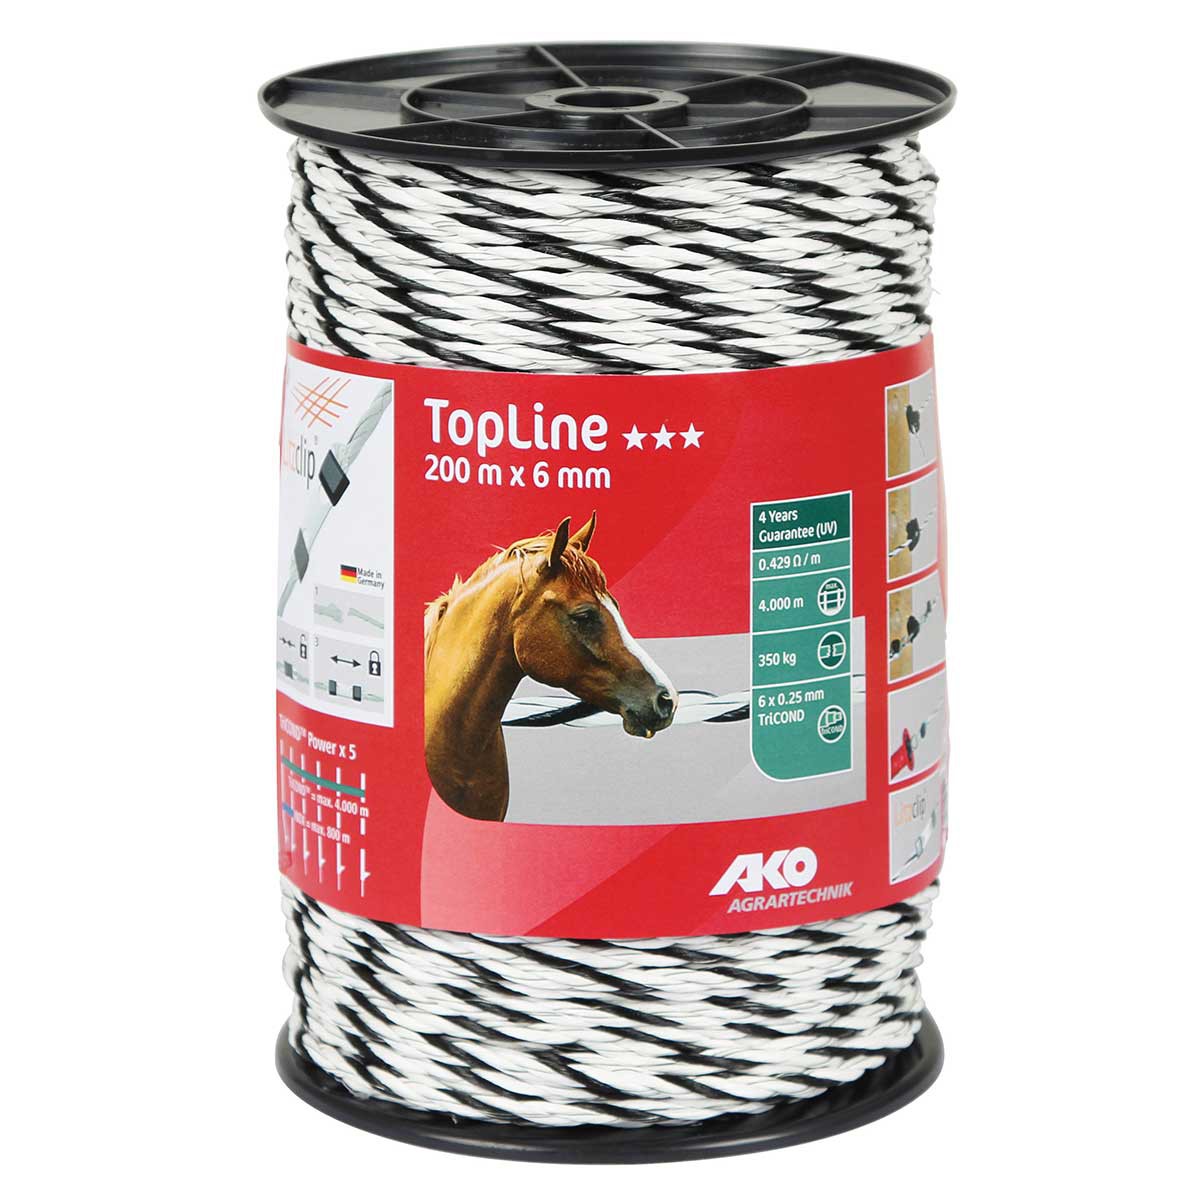 Ako villanypásztor kötél TopLine Plus 200m, Ø 6mm, 6x0.25 TriCOND, fehér-fekete